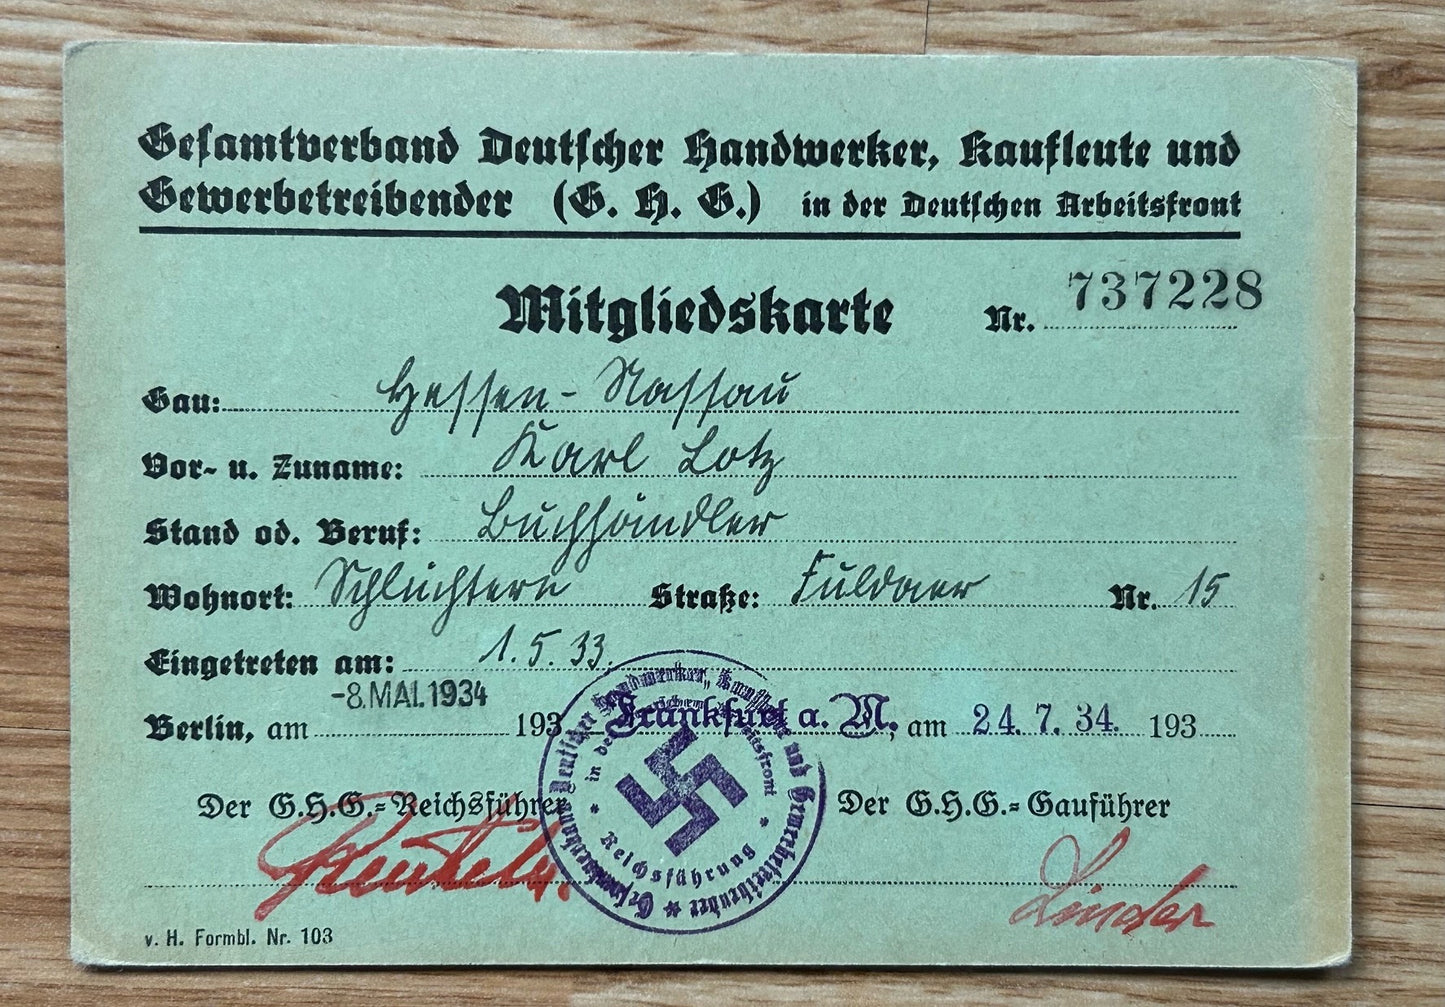 Early DAF craftsmen organization membership card